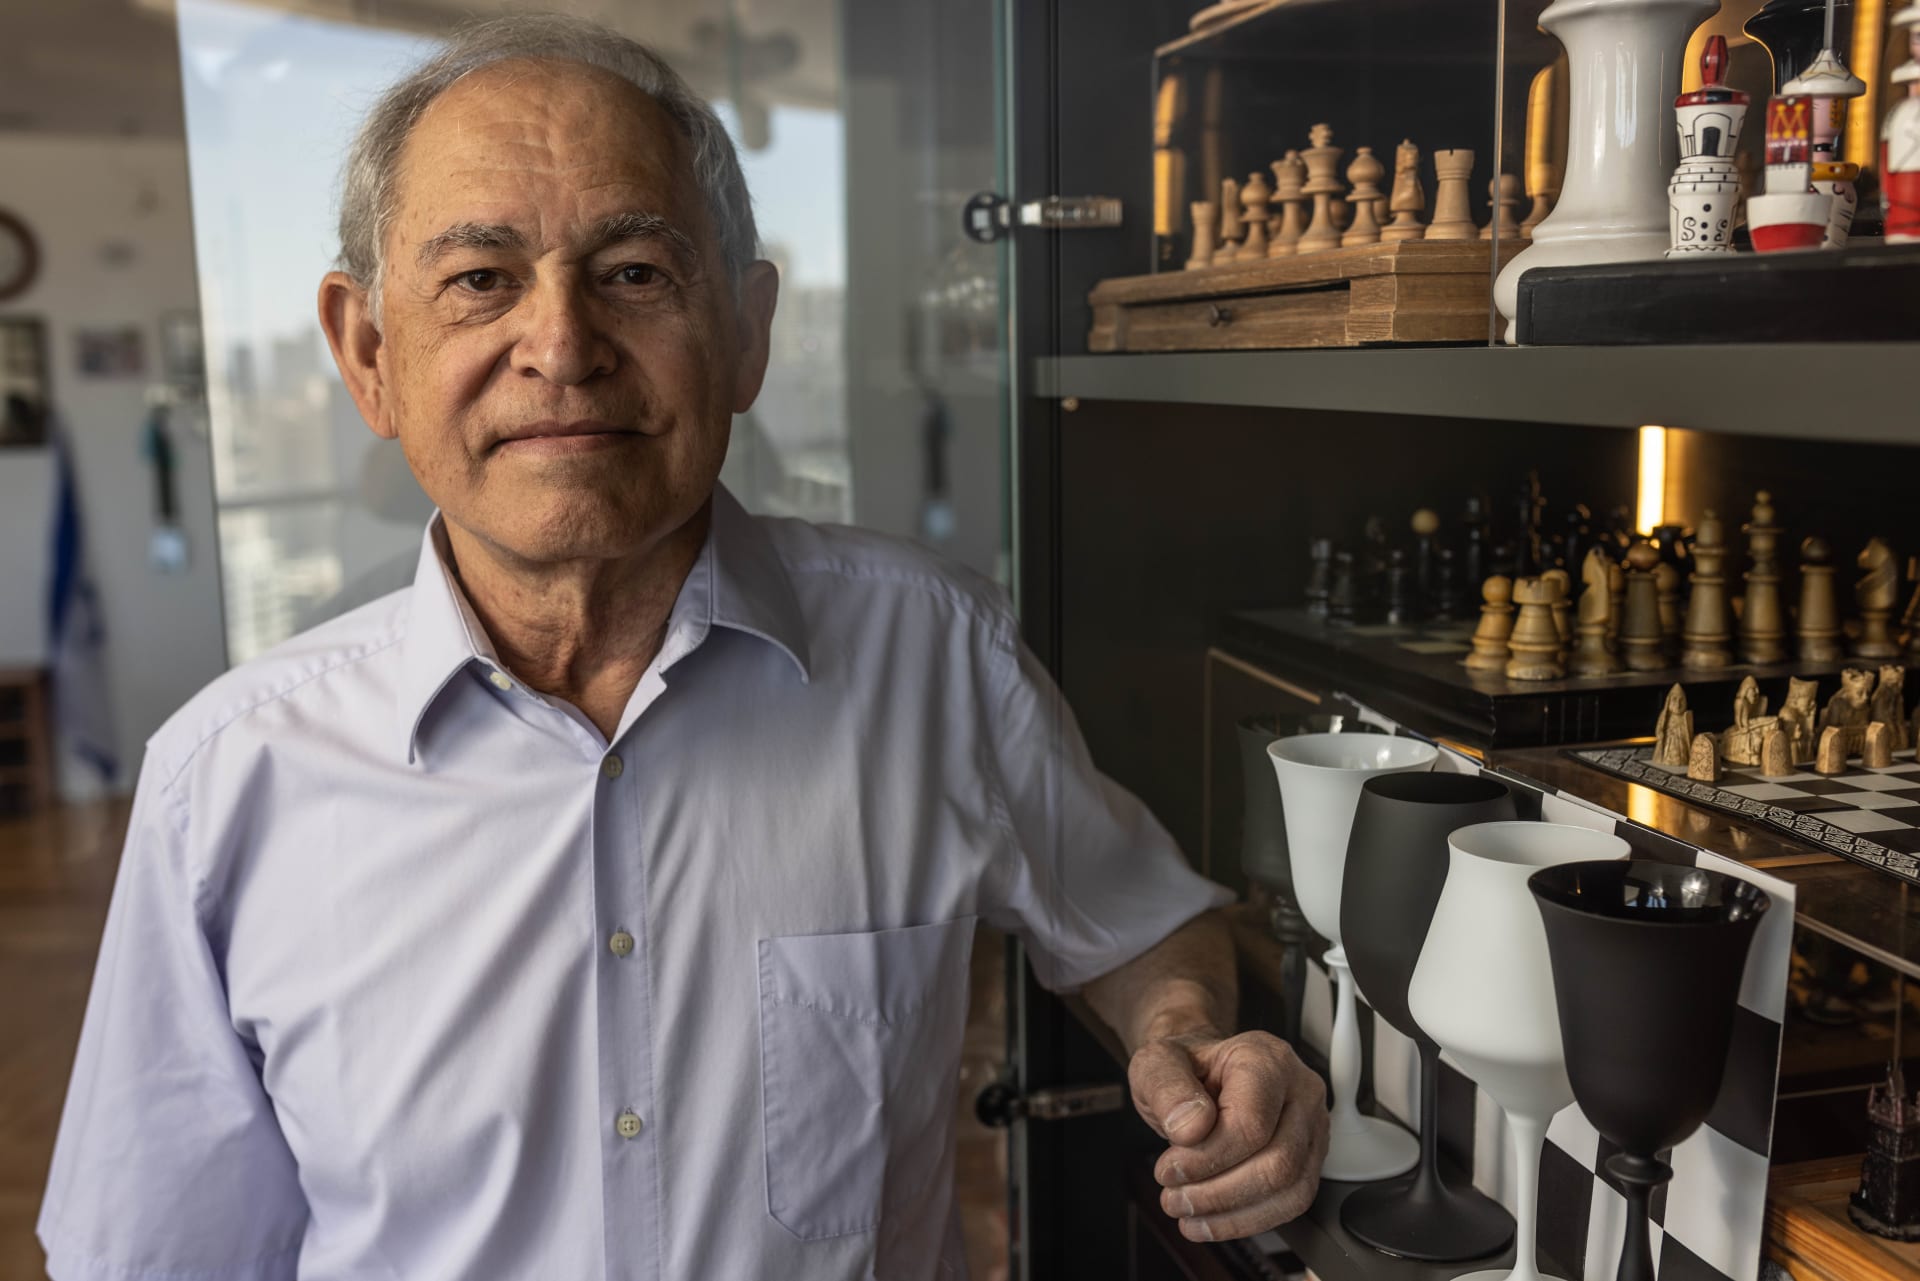 Arie Gillon v Izraeli 35 let vede firmu na dovoz vědeckých přístrojů.